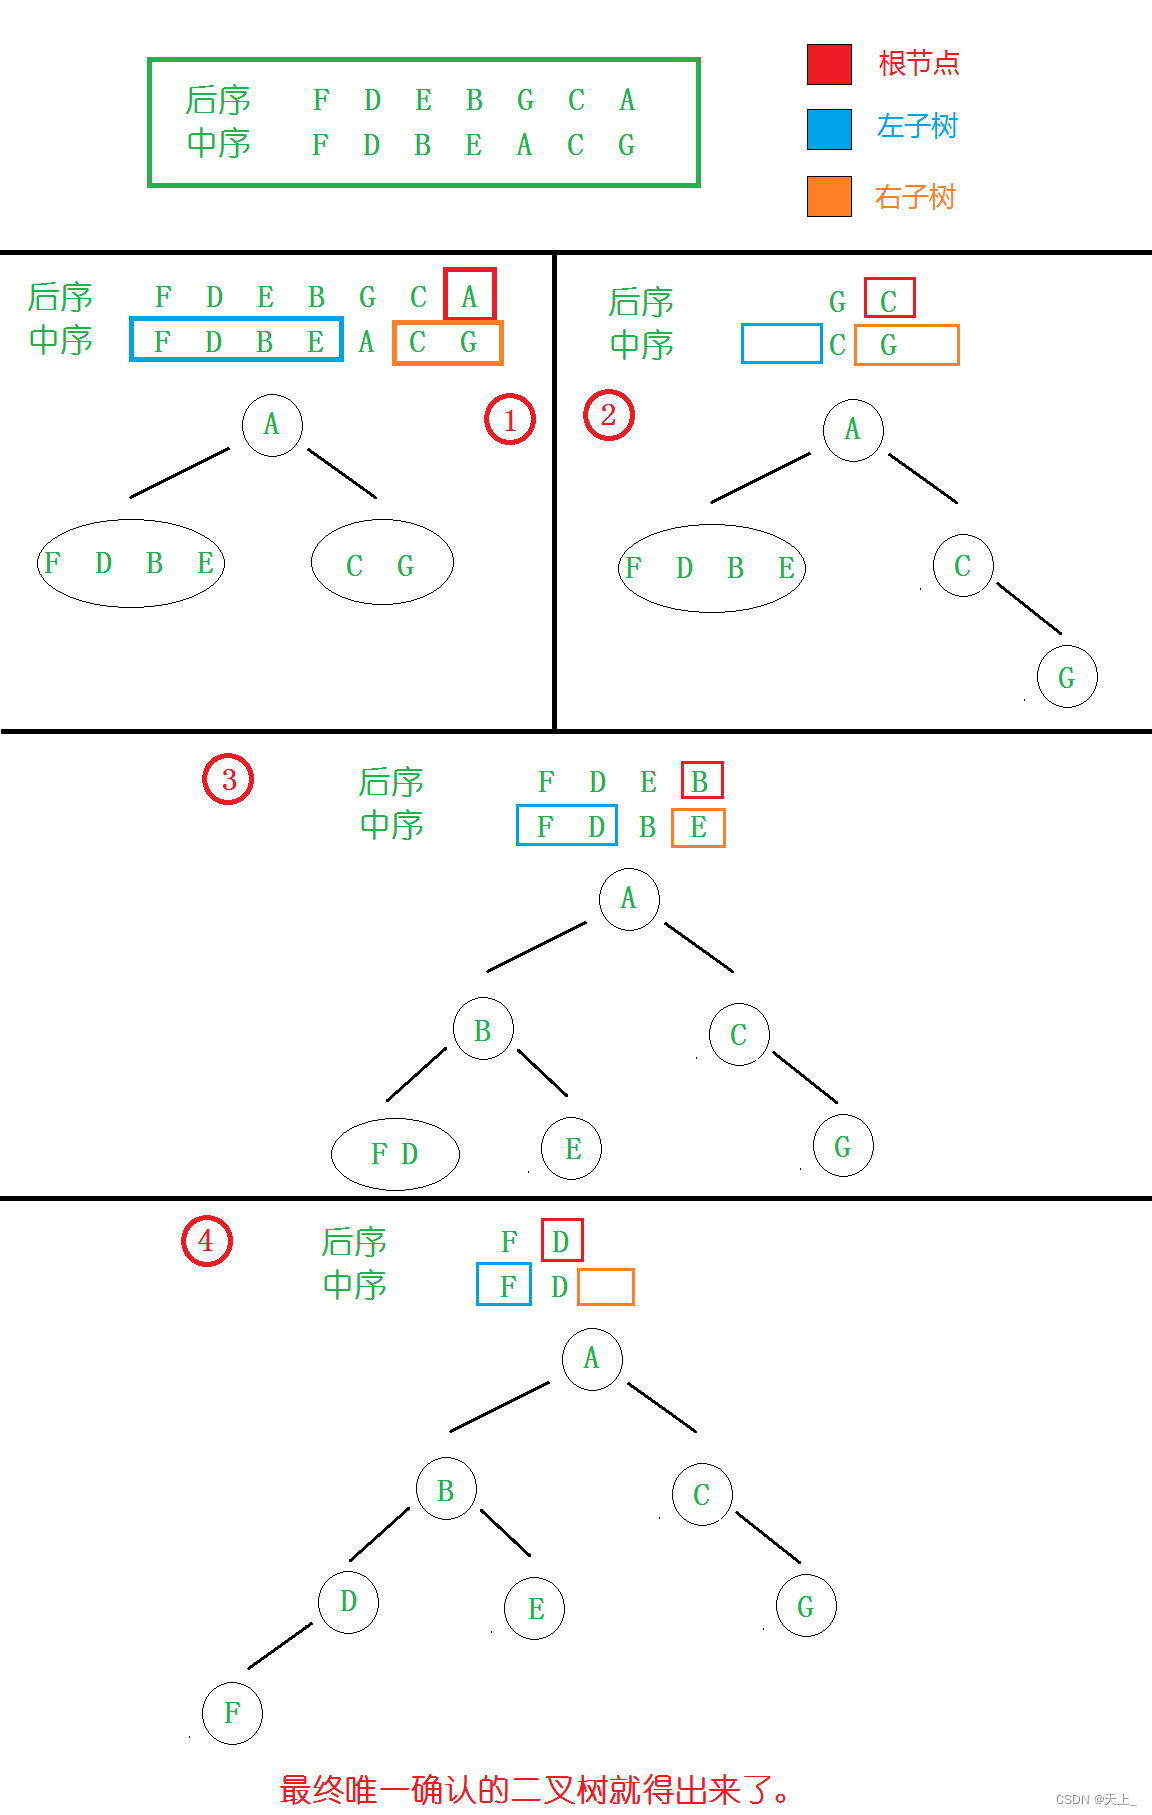 数据结构和算法学习记录——小习题-二叉树的遍历二叉搜索树